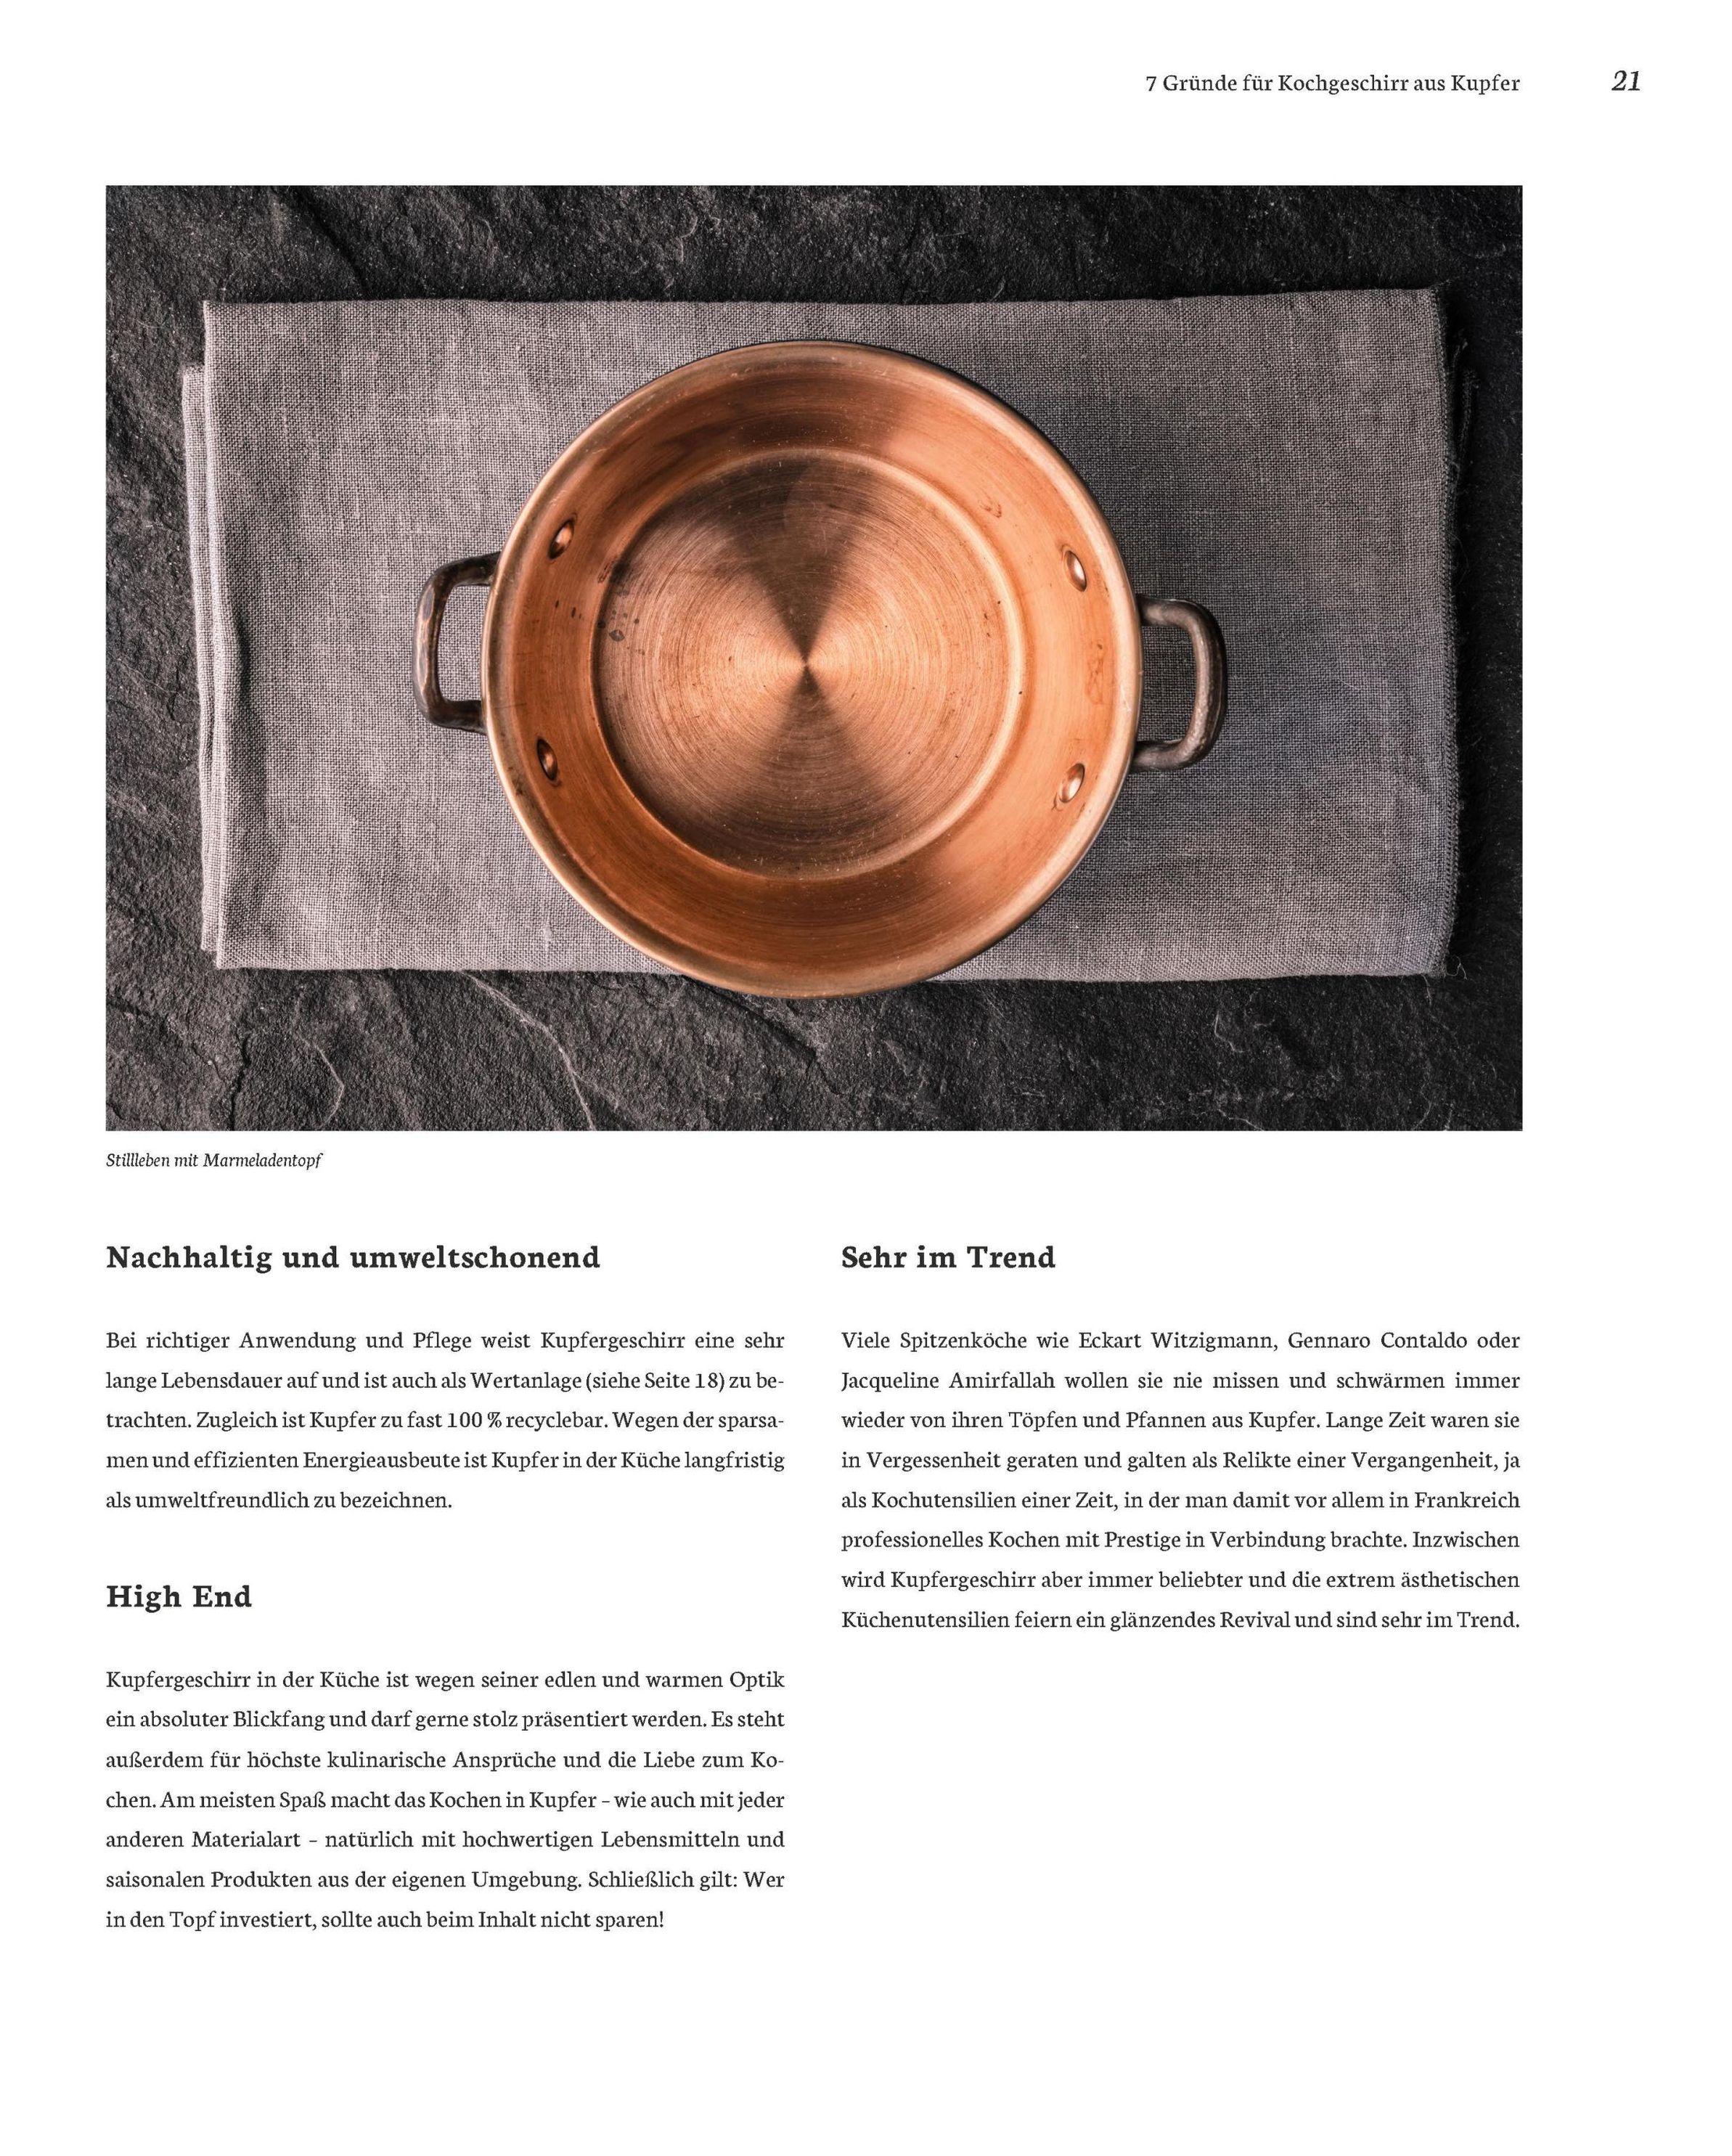 Kochen in Kupfer - Silber GAD 2021 - Swiss Gourmet Book Award Gold 2021